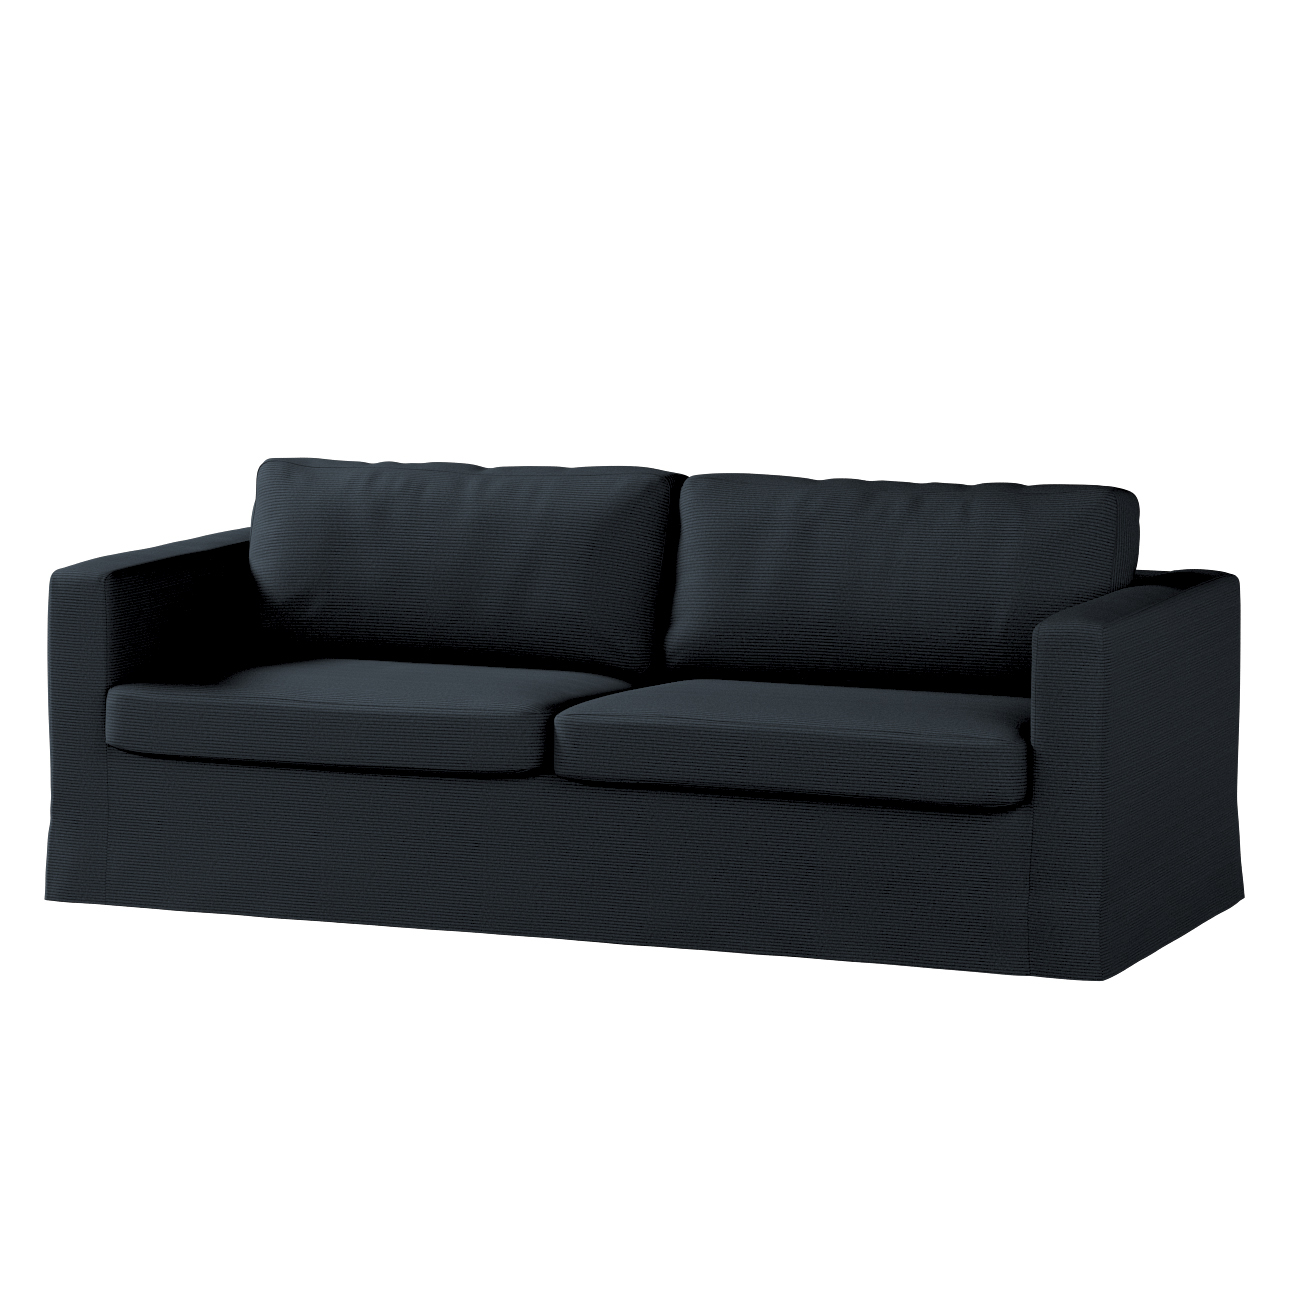 Bezug für Karlstad 3-Sitzer Sofa nicht ausklappbar, lang, anthrazit, Bezug günstig online kaufen